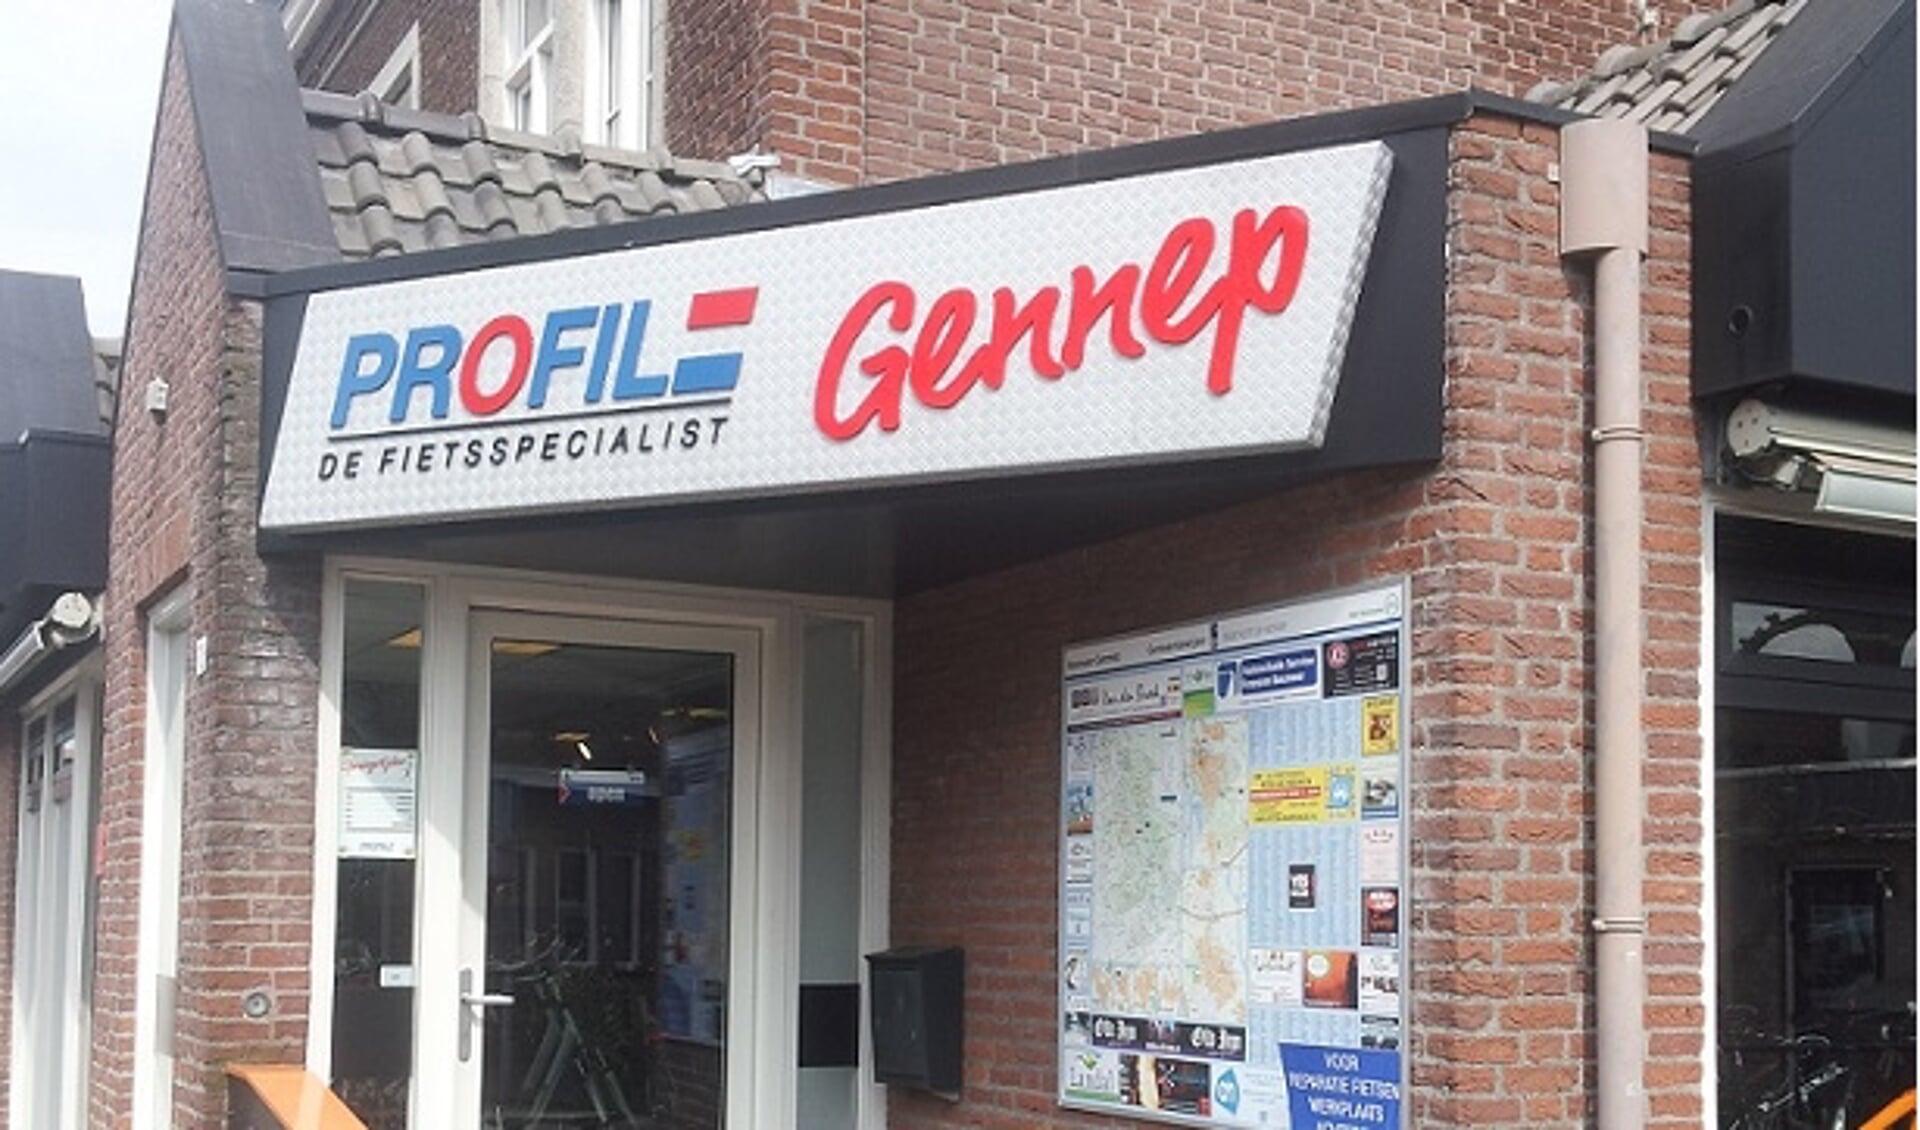 Frans Thijs van Profile Gennep gaat stoppen. Er is nog een kleine hoop voor overname van de winkel. 